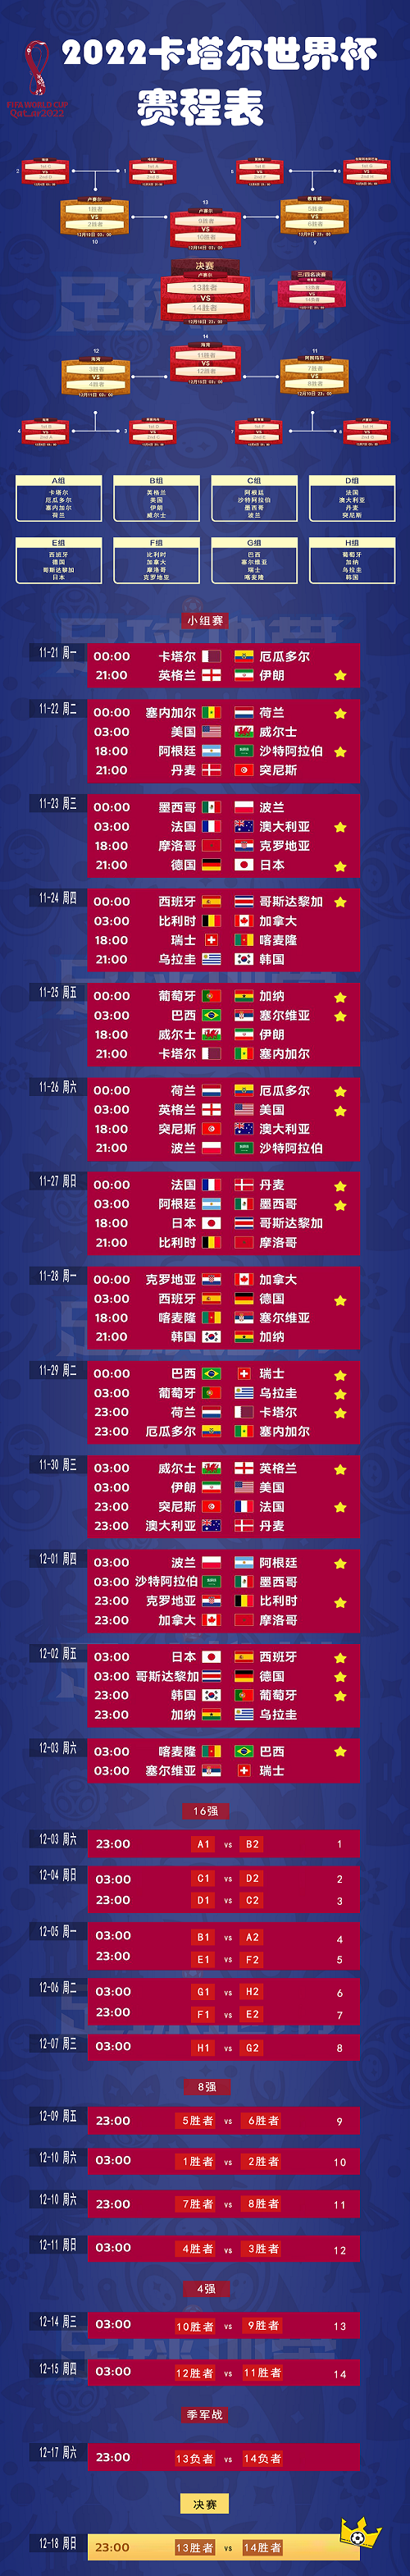 2022世界杯足球赛哪天开始 2022世界杯足球赛程表时间分享